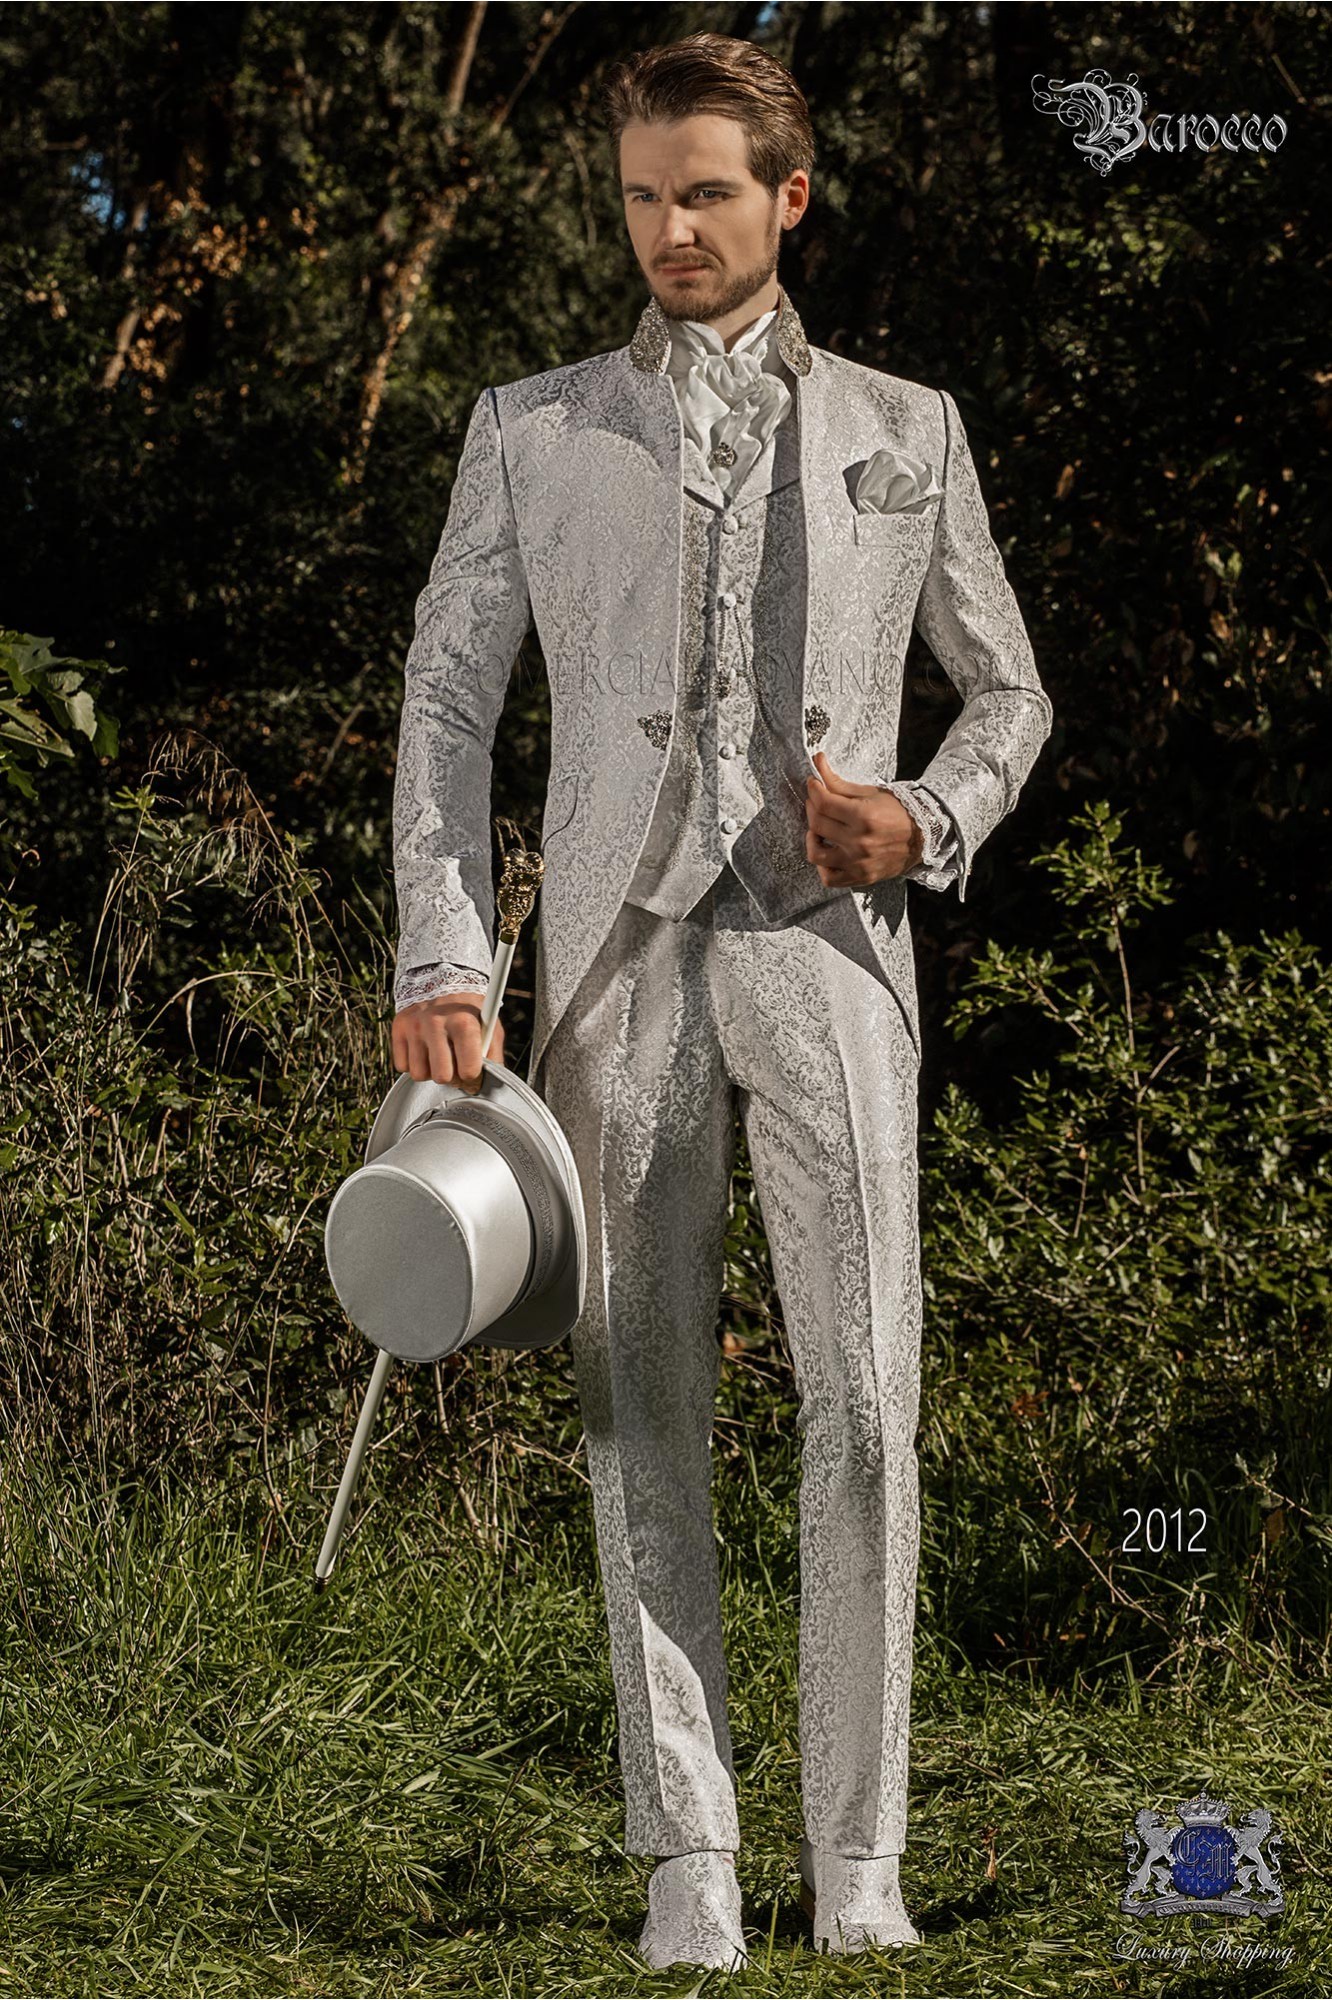 Vintage Men wedding frock coat in pearl gray brocade fabric with Mao collar with rhinestones model 2012 Mario Moyano